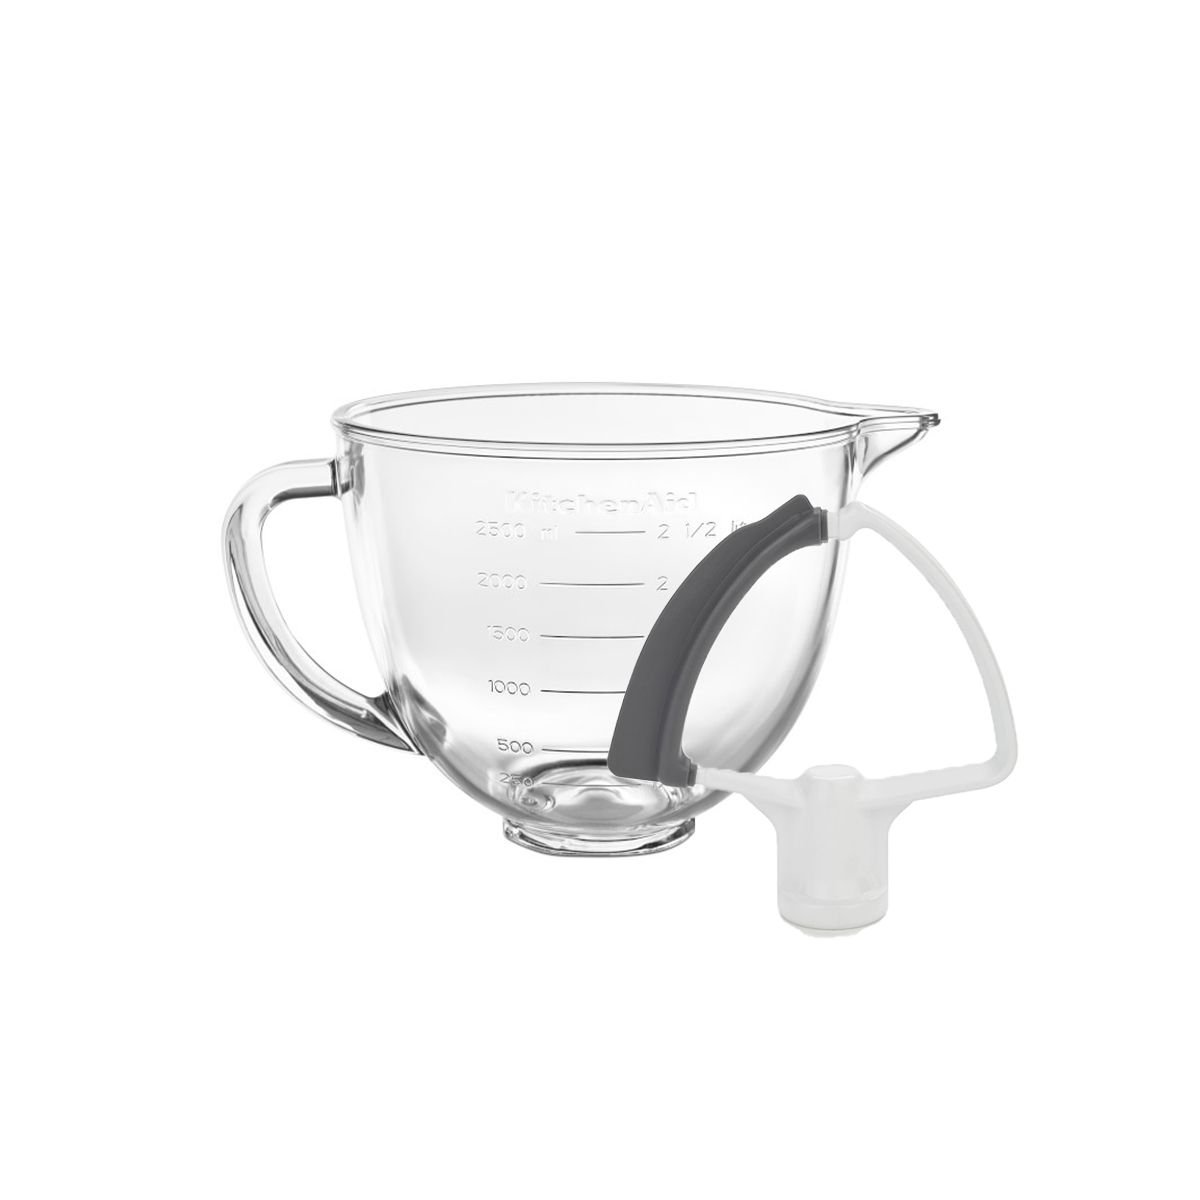  KitchenAid 3.5 Quart Tilt-Head Glass Bowl - KSM35GB: Home &  Kitchen